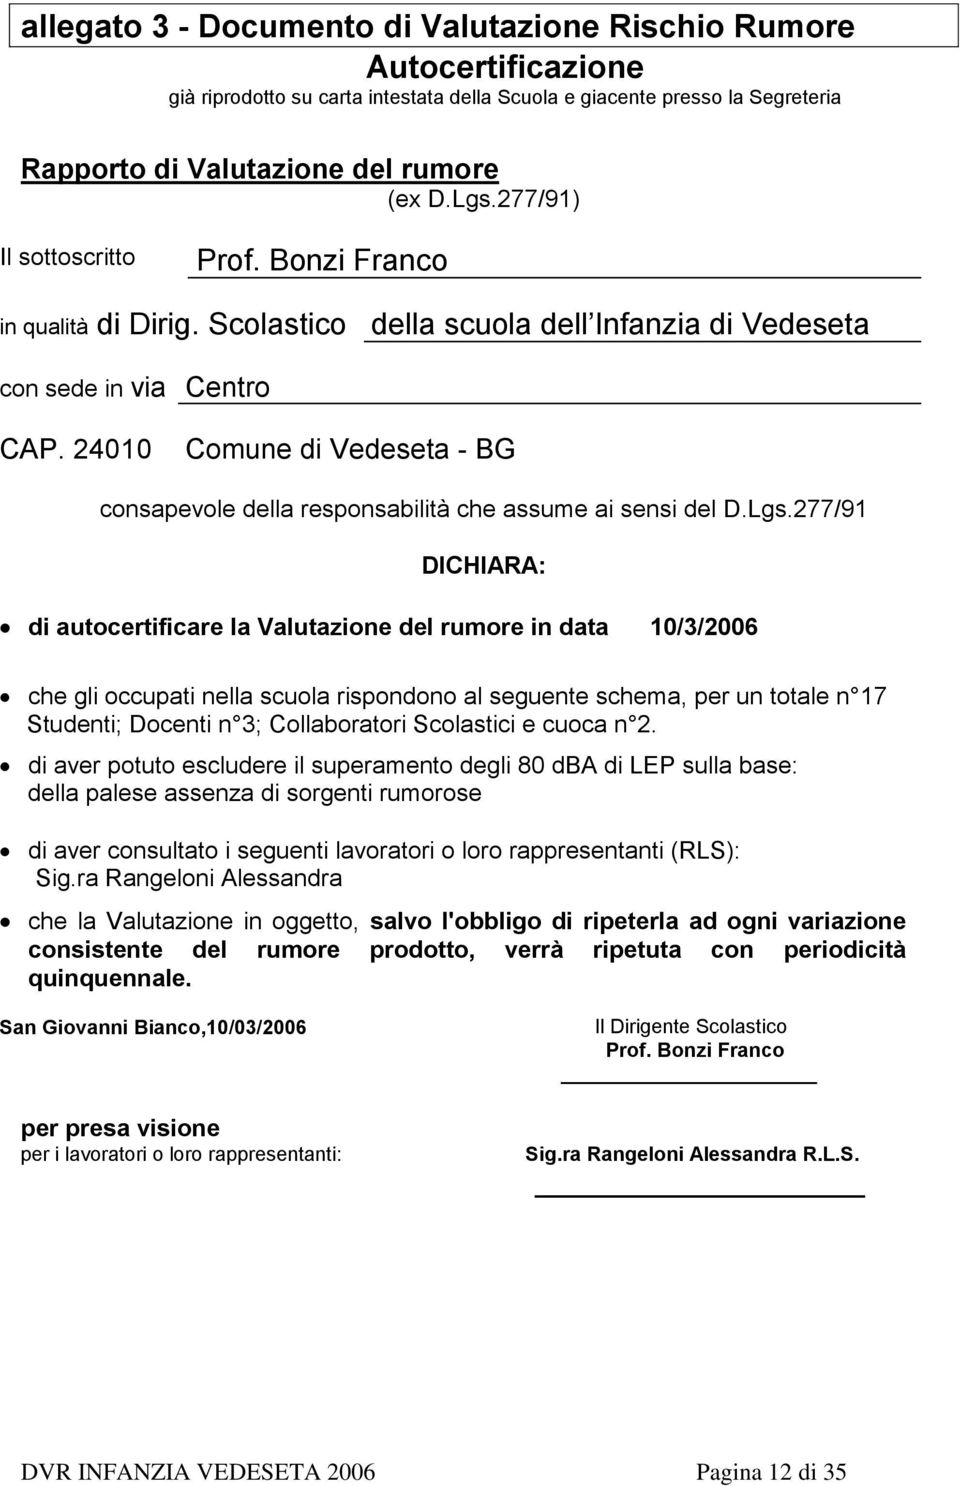 24010 Comune di Vedeseta - BG consapevole della responsabilità che assume ai sensi del D.Lgs.